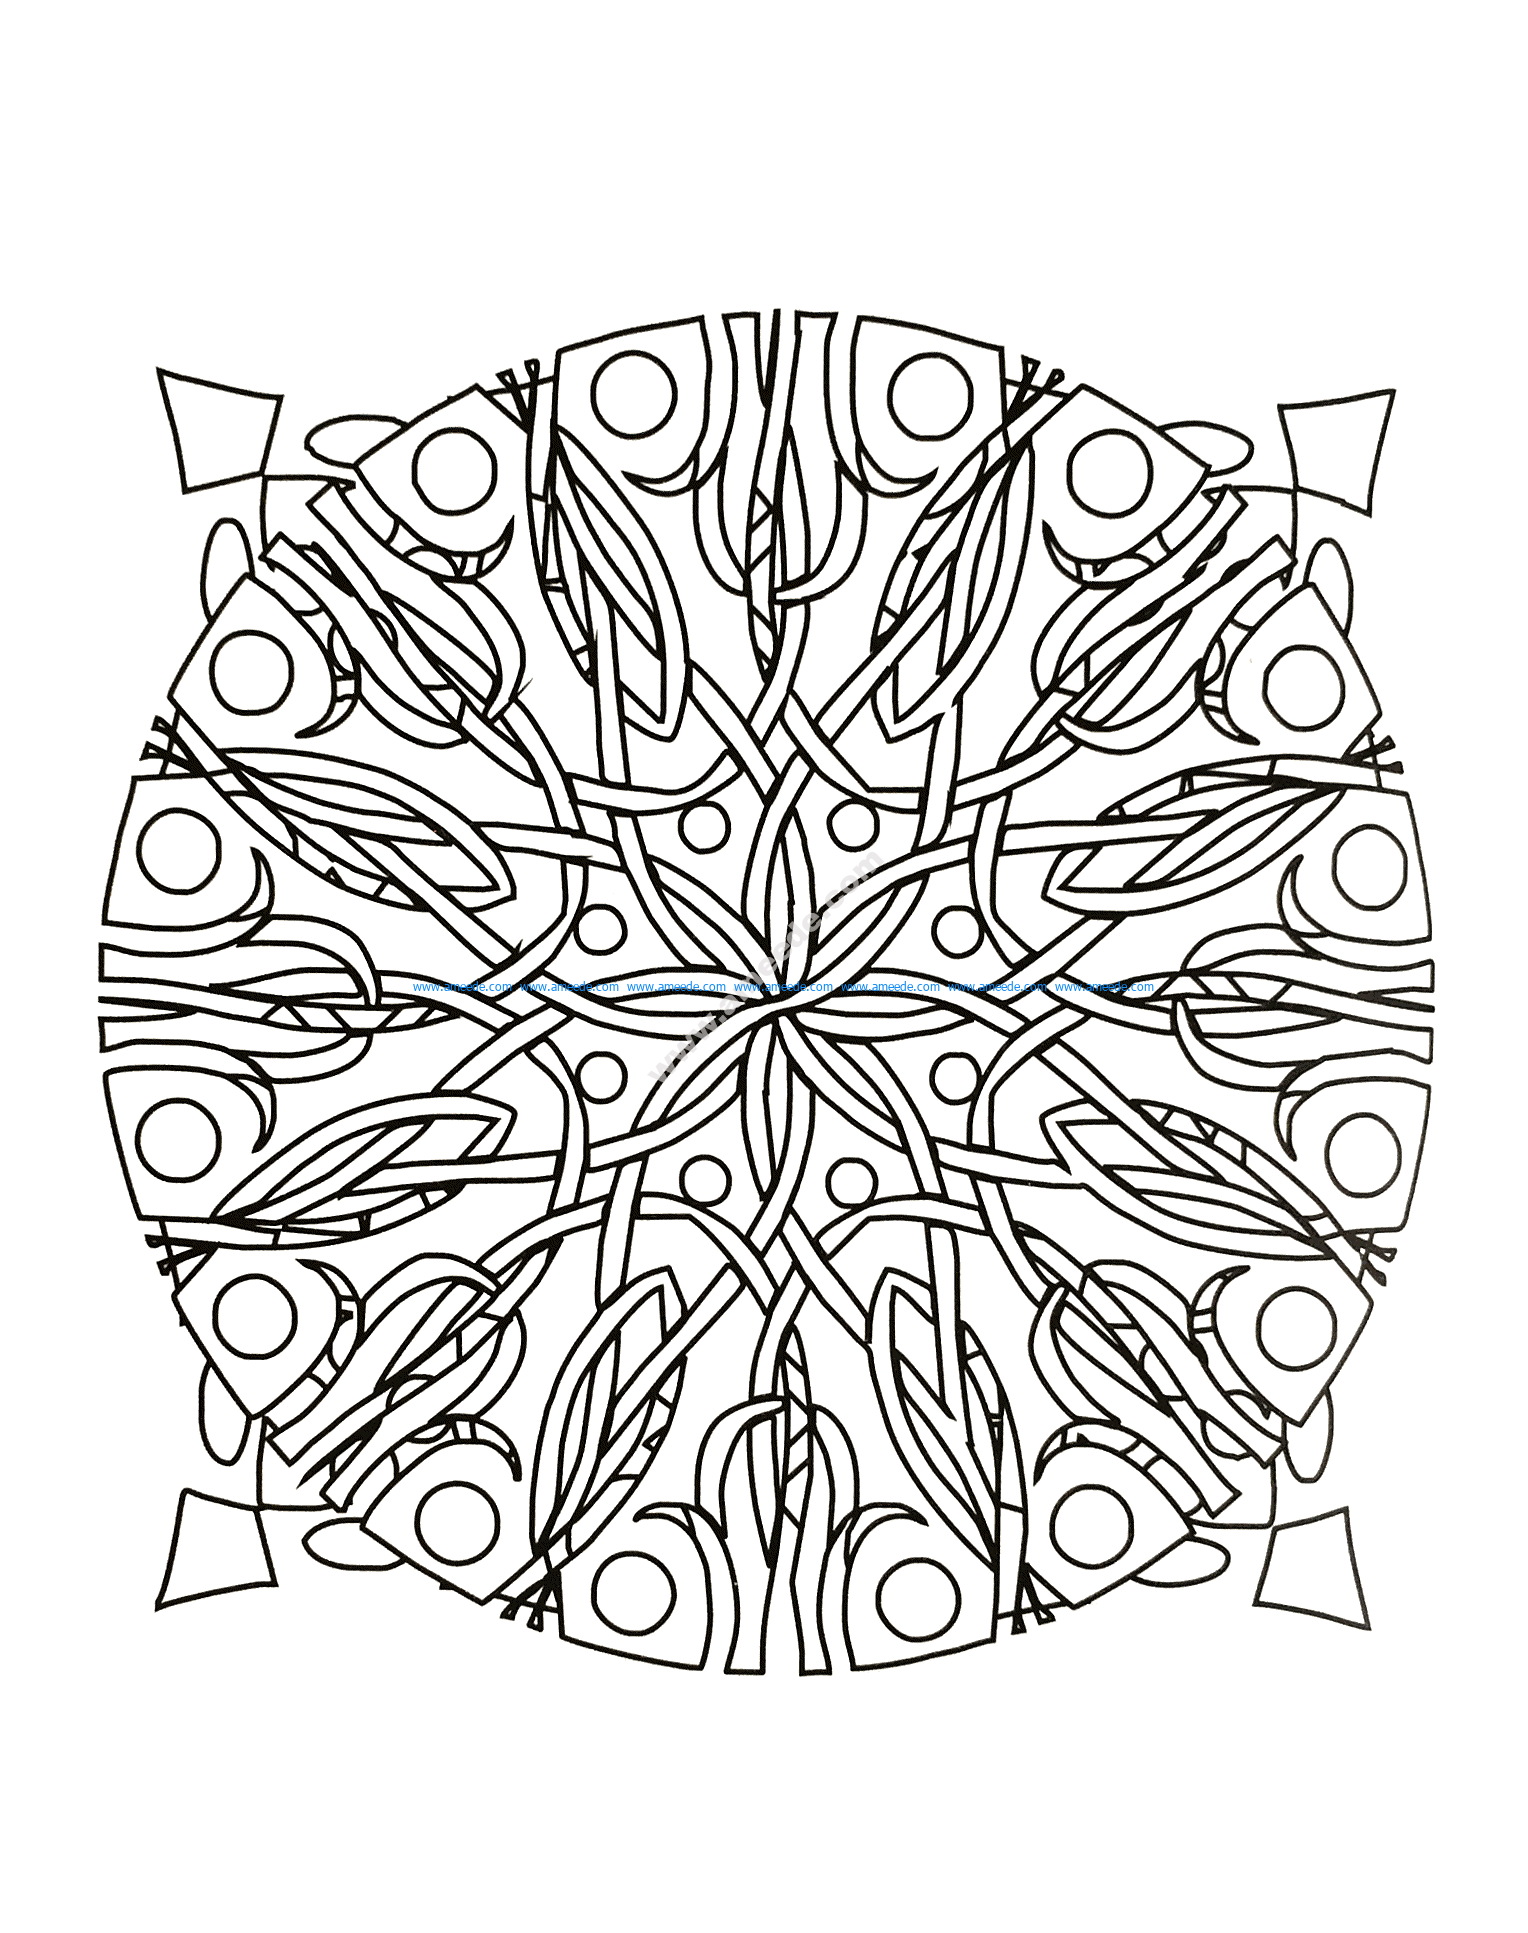 Download Mandala a colorier gratuit ronces - Download Free Vector